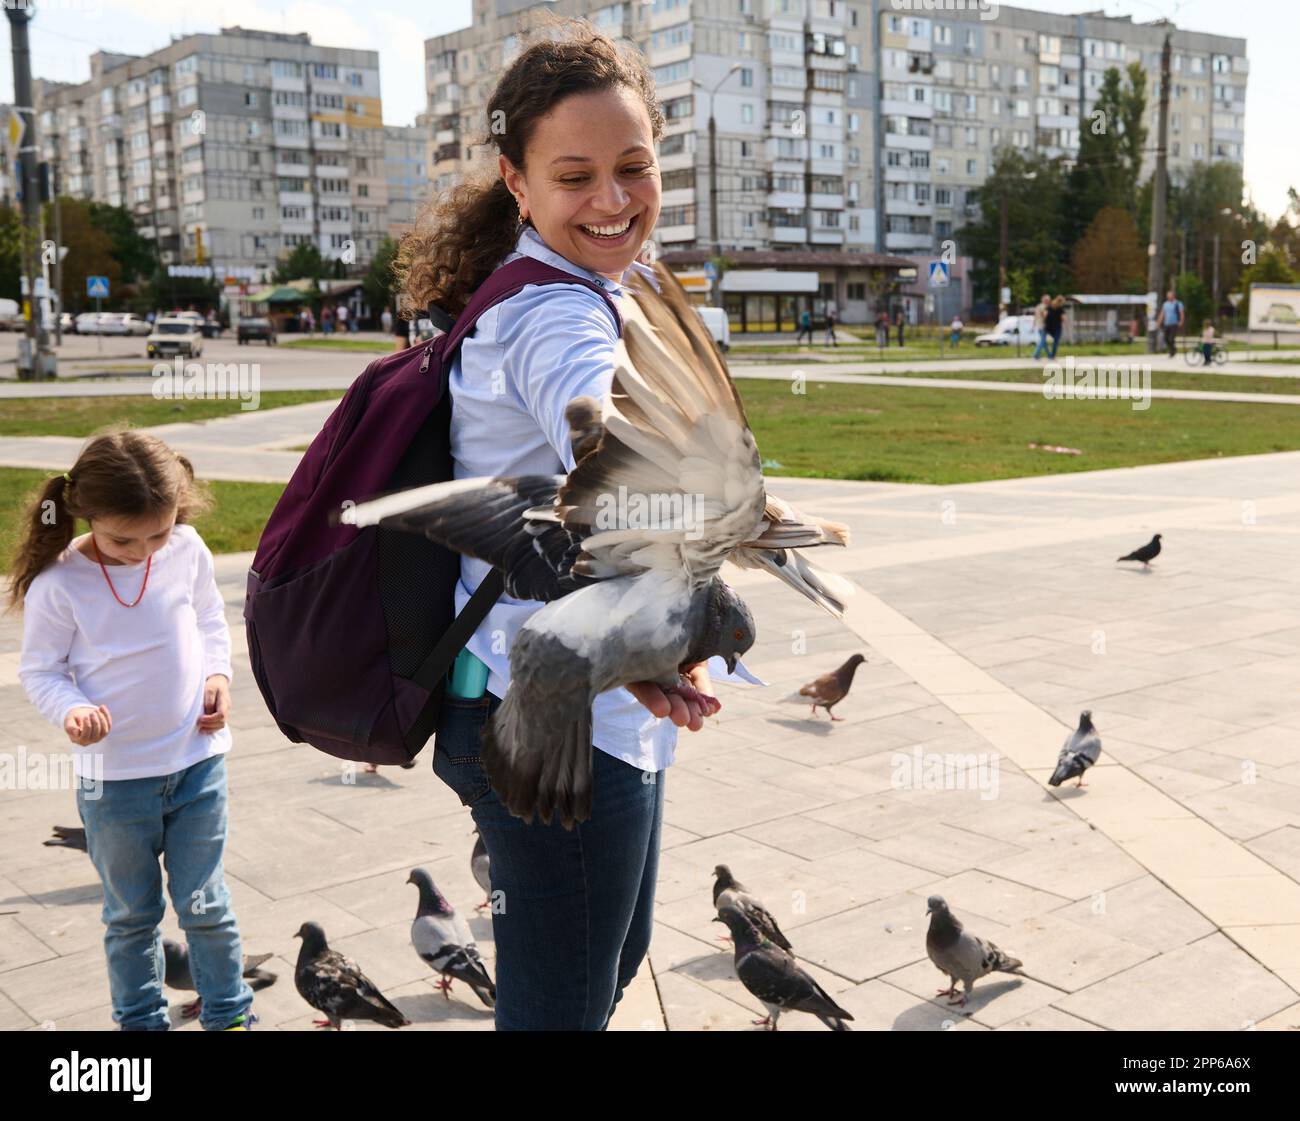 Lächelnde, multiethnische Touristinnen mit Rucksack, die positive Emotionen ausdrücken, während sie Felsentauben und wilde Tauben auf dem städtischen Platz füttern. Der Betrug Stockfoto